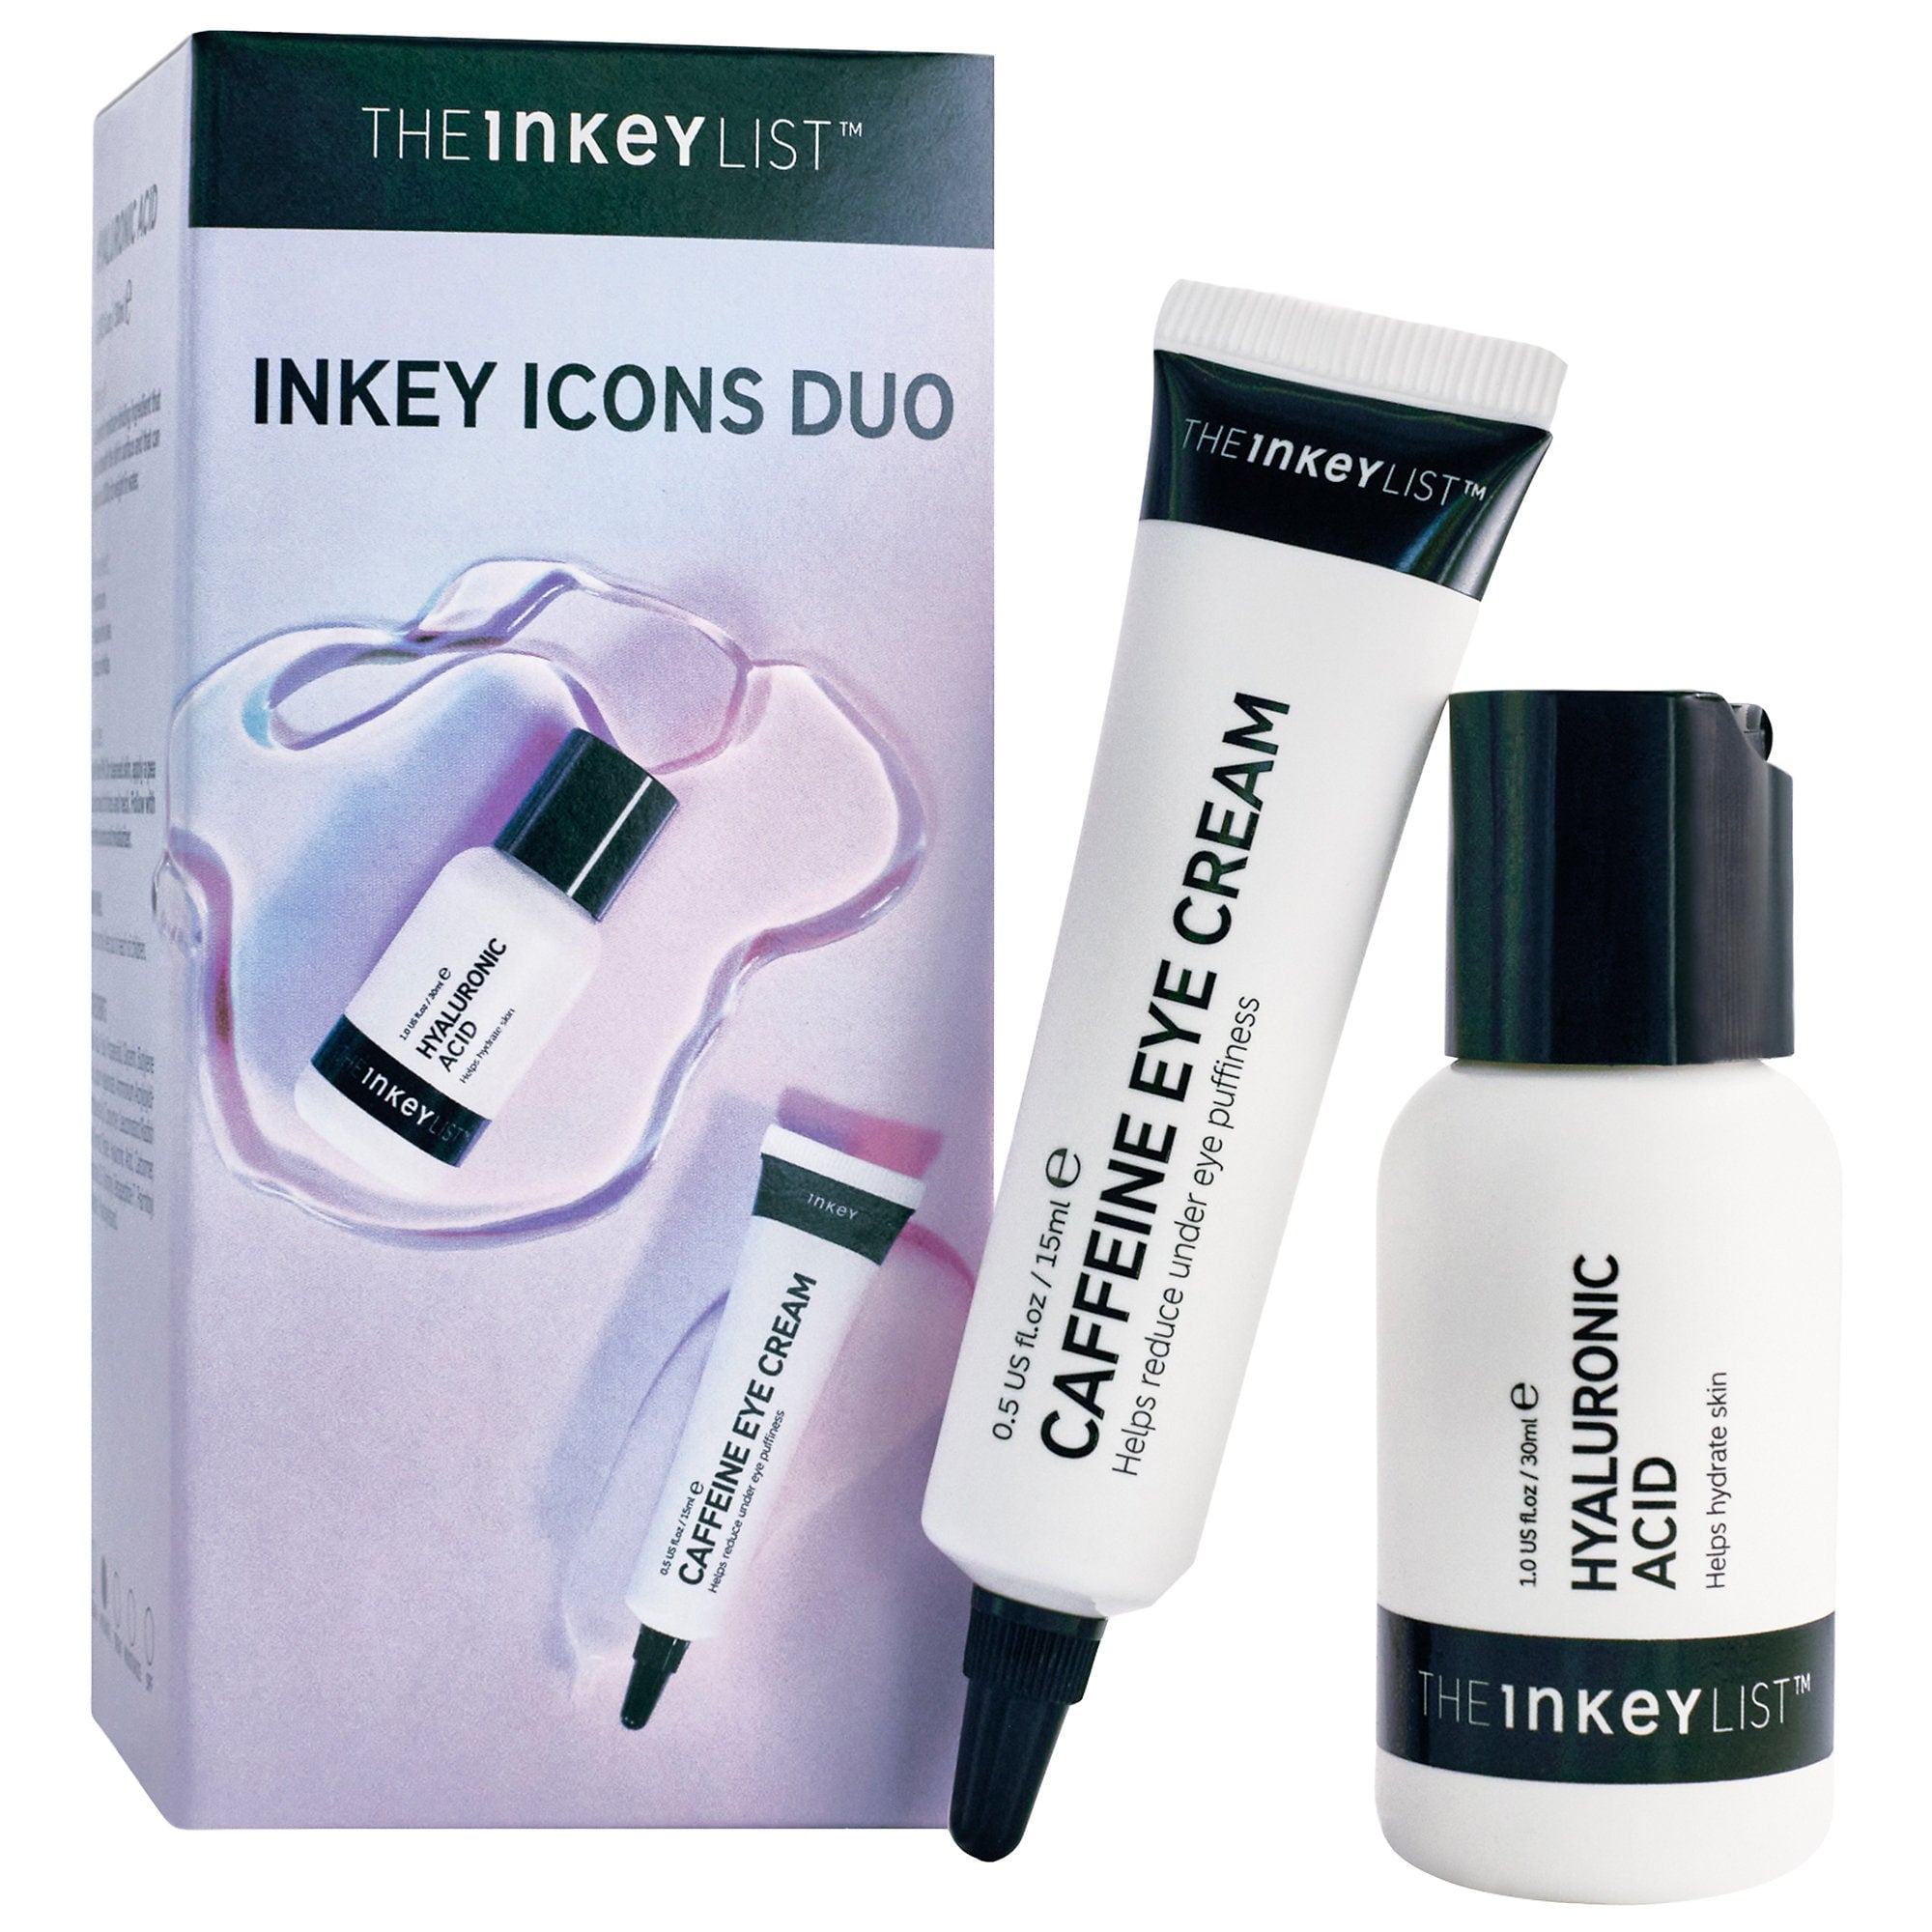 THE INKEY LIST - Inkey Icons Duo